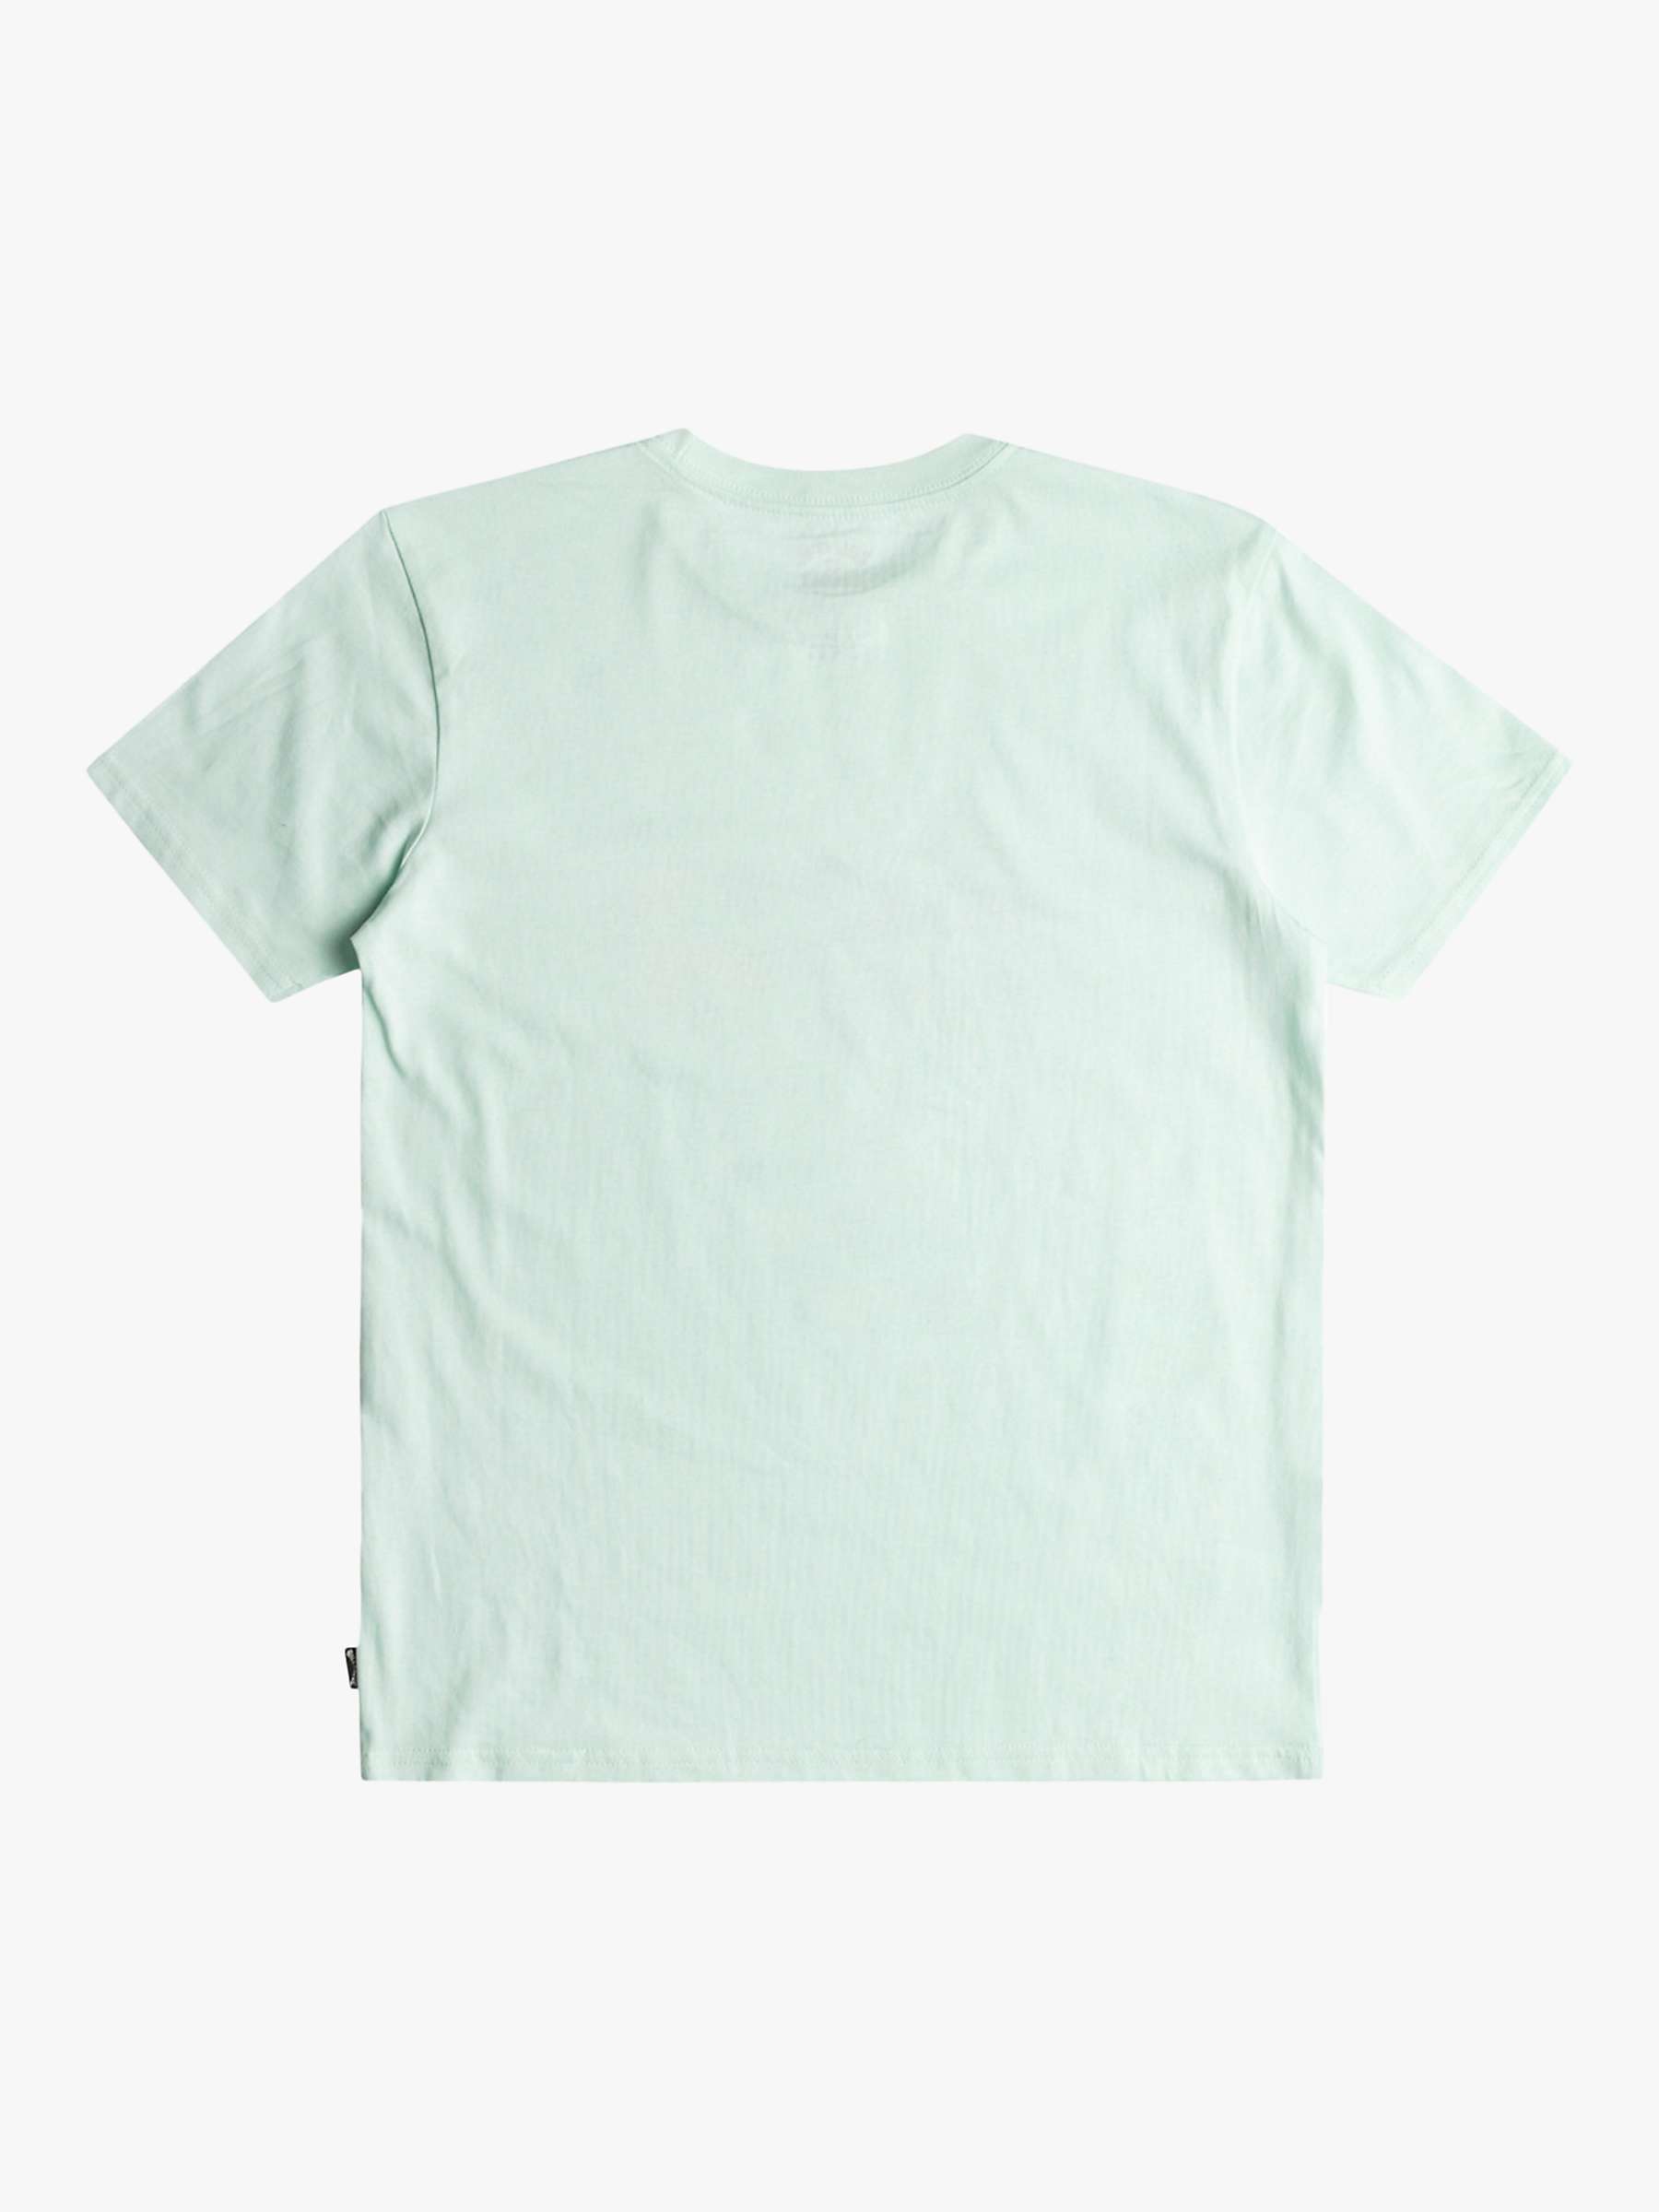 Buy Billabong Kids' Wave Short Sleeve T-Shirt, Seaglass Online at johnlewis.com